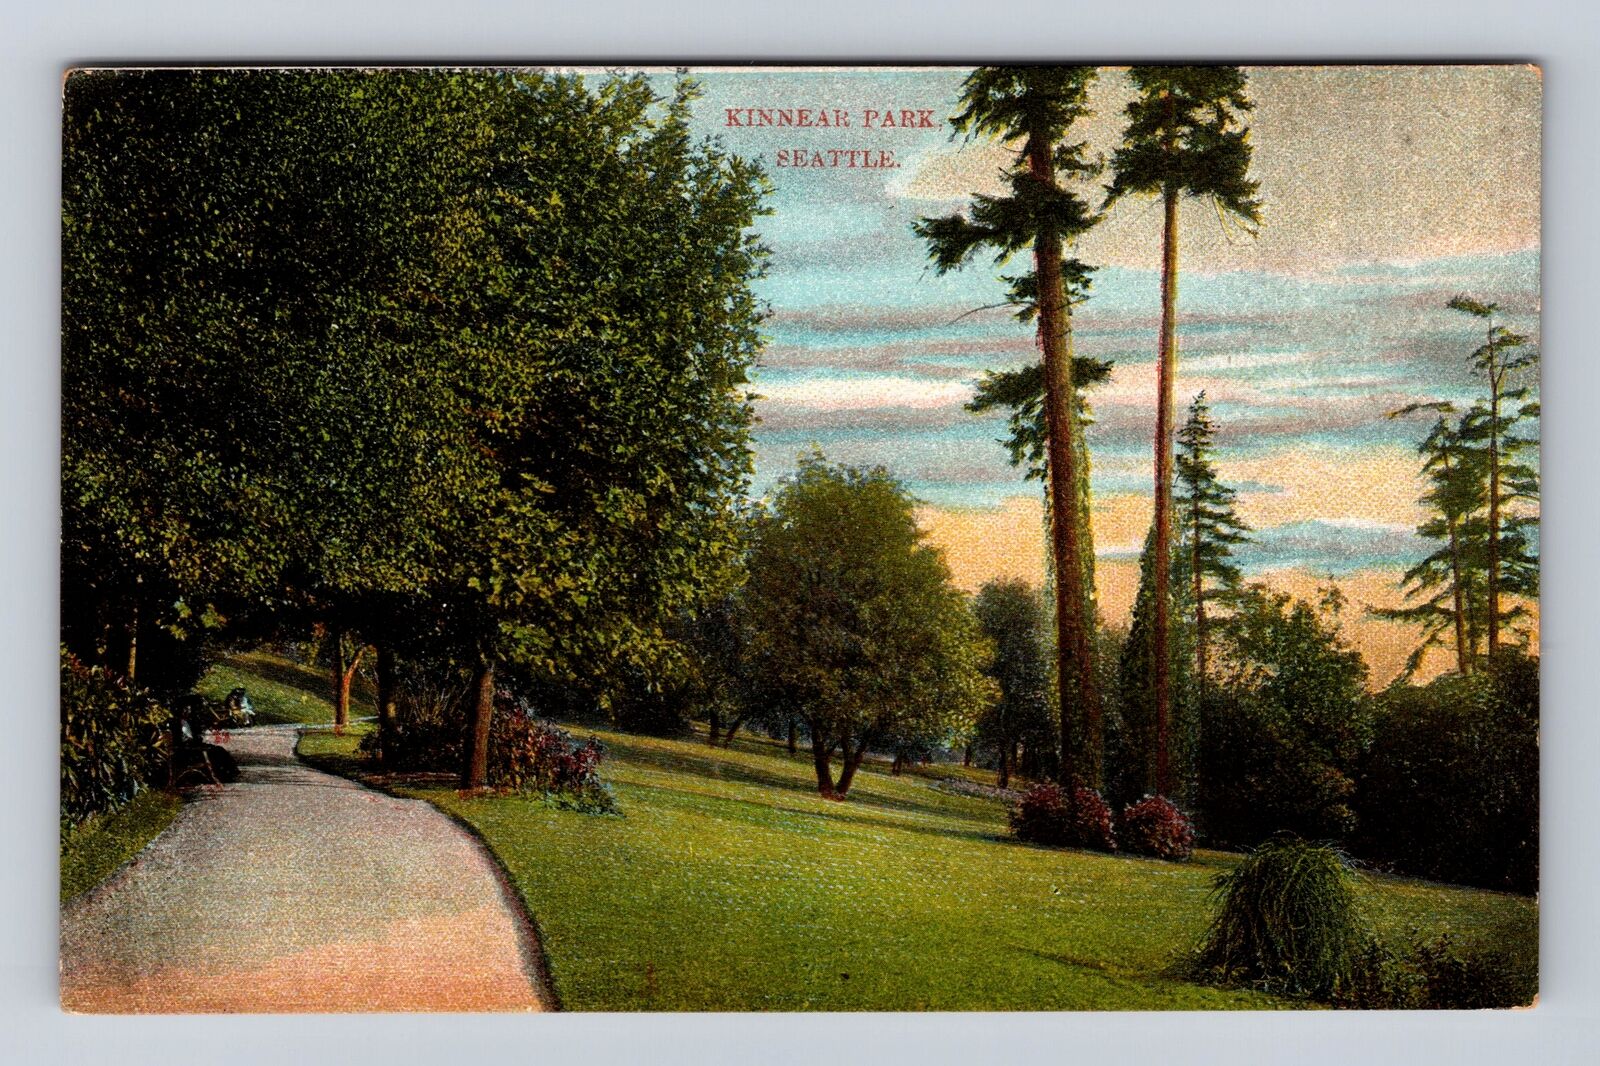 Seattle WA-Washington, Kinnear Park, Antique, Vintage Souvenir Postcard